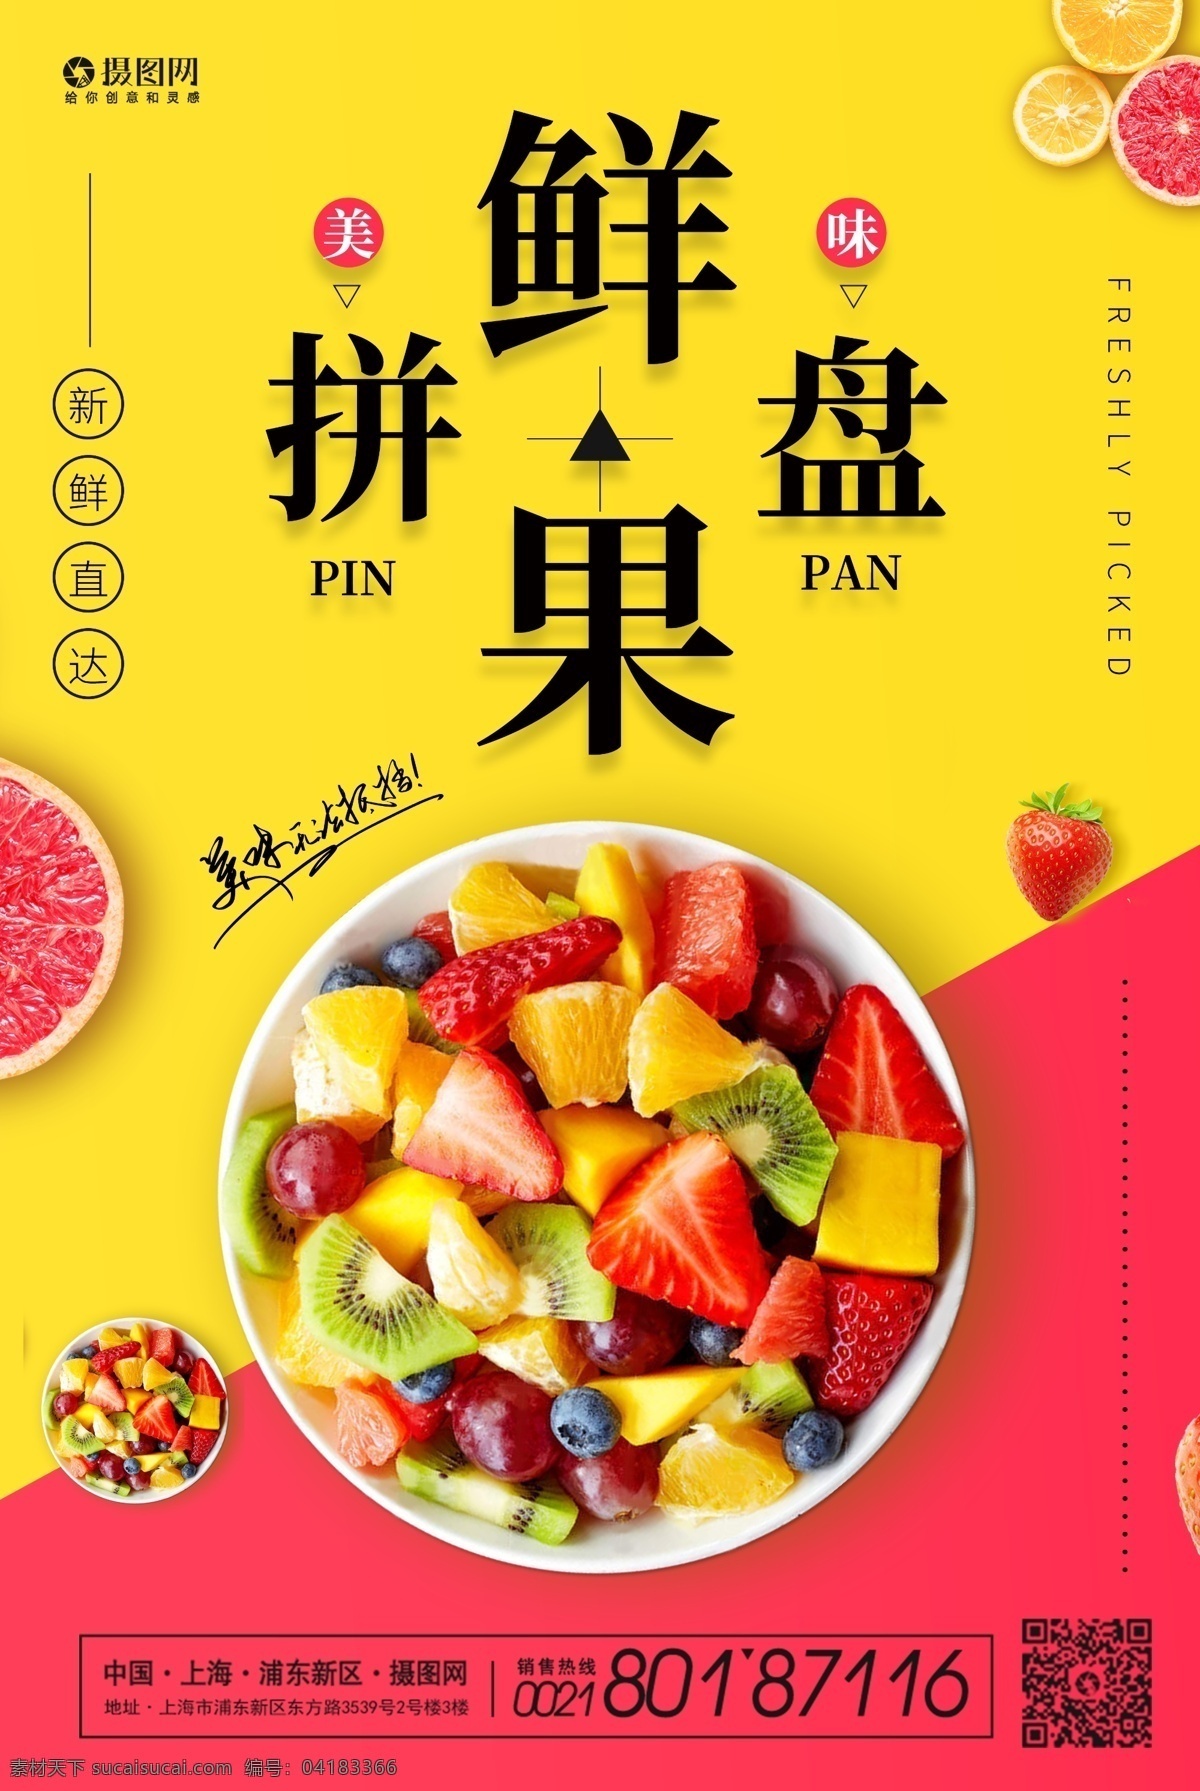 美味 新鲜 果盘 水果 拼盘 海报 新鲜果盘 草莓 鲜果 水果拼盘 美食 水果店